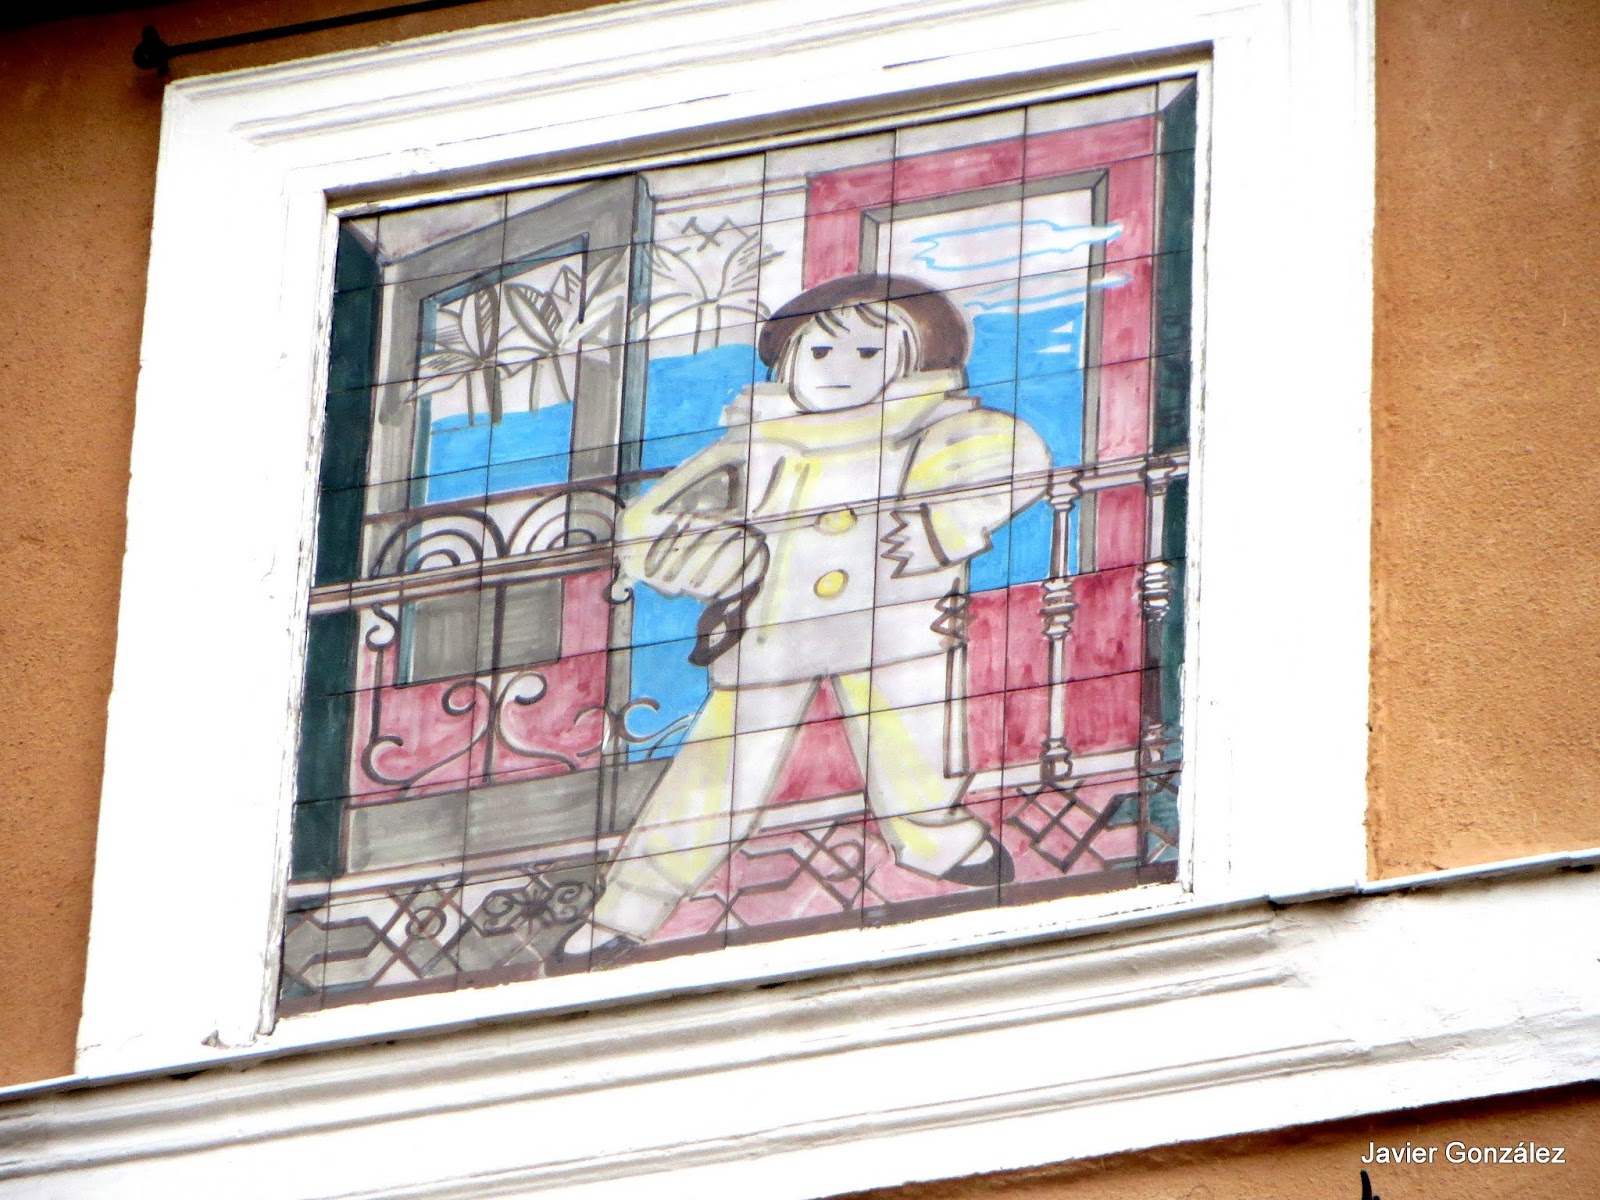 Cuadros en azulejos de Picasso. Lavapiés. Madrid #cityscapes